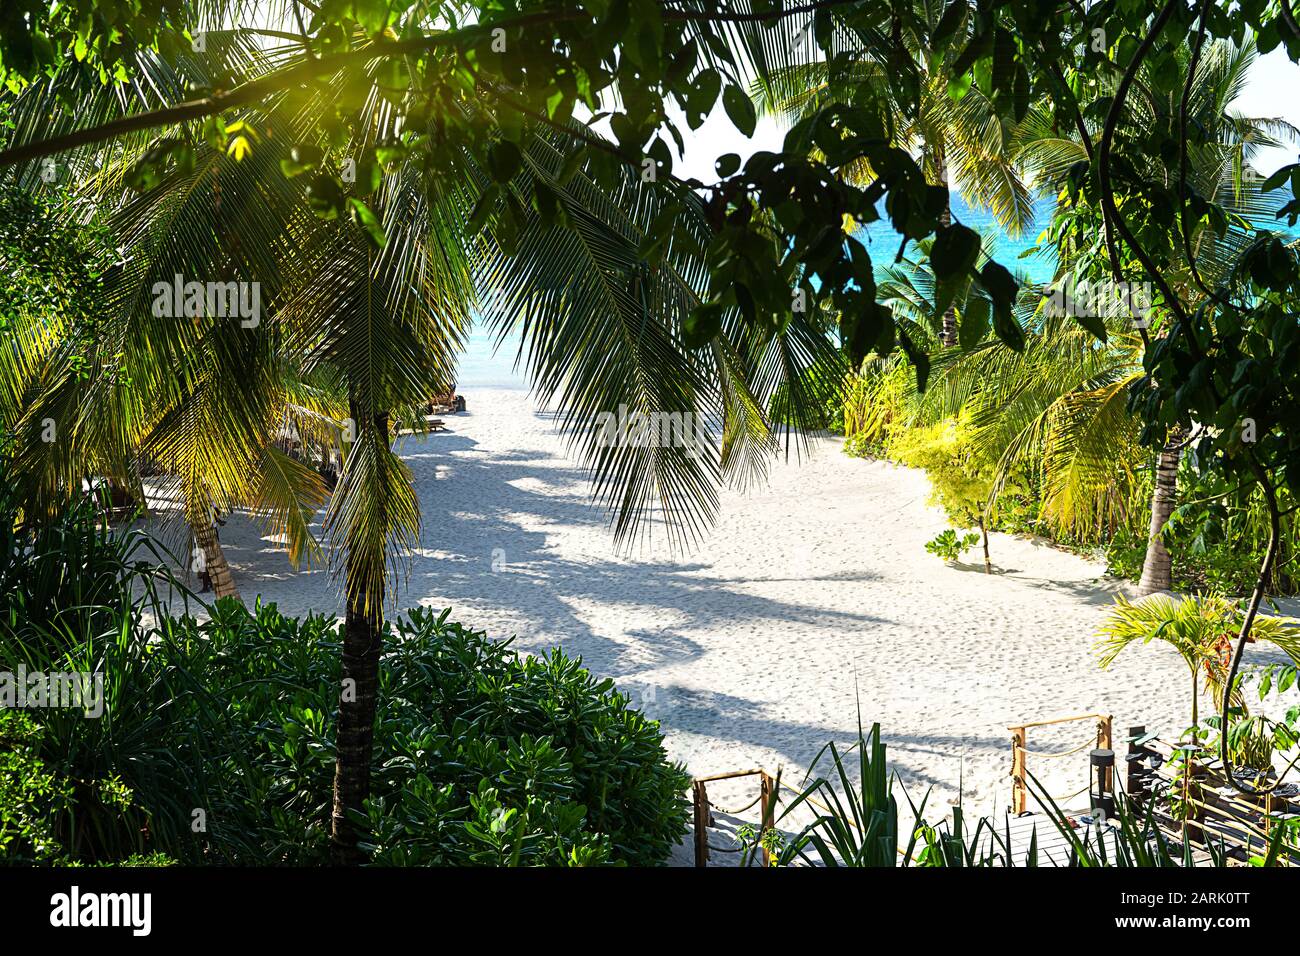 Vista panorámica de un hermoso día soleado en la playa tropical de arena en las Maldivas. Concepto de viaje. Foto de stock